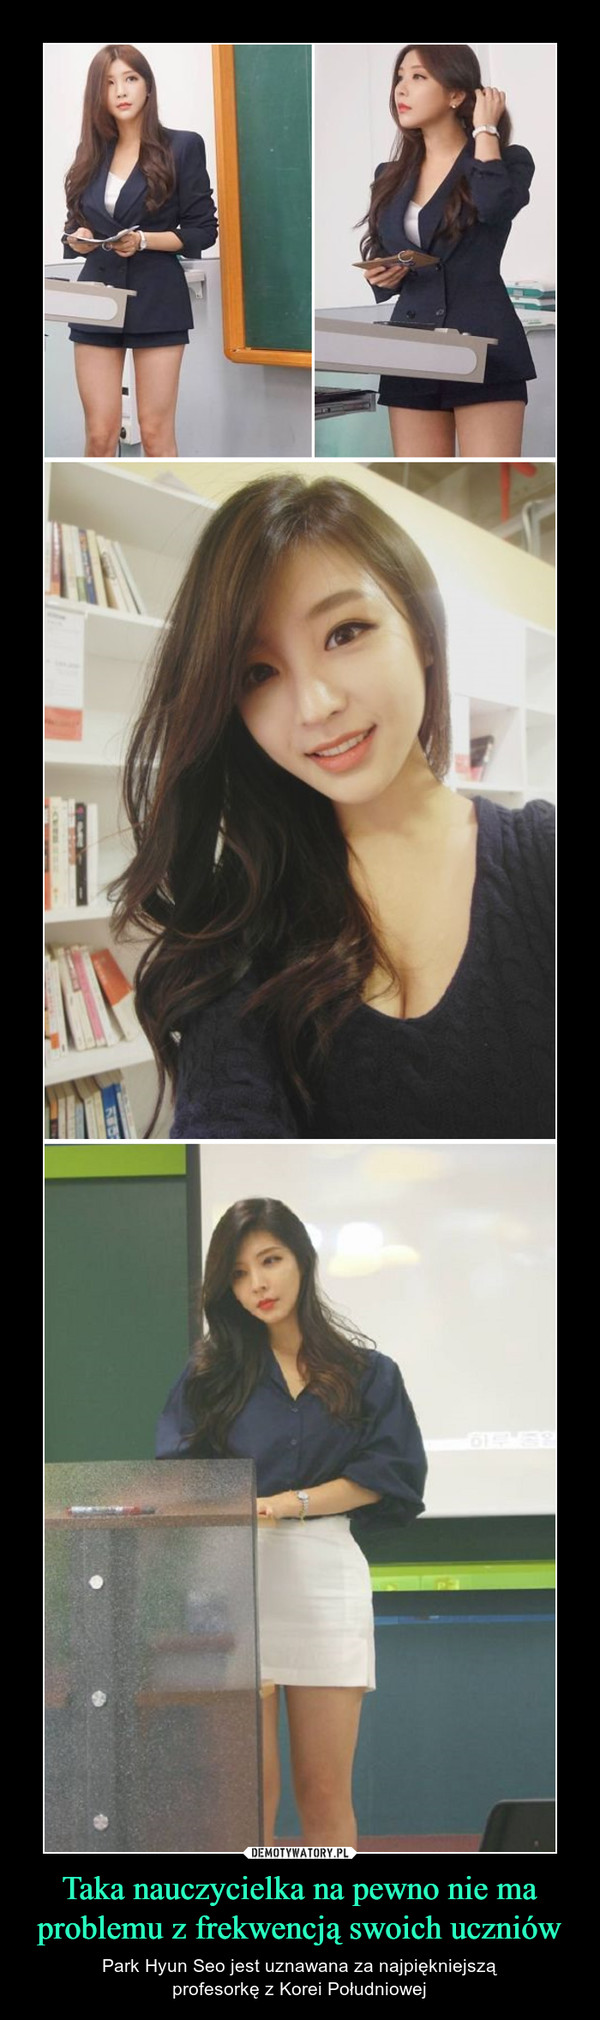 Taka nauczycielka na pewno nie ma problemu z frekwencją swoich uczniów – Park Hyun Seo jest uznawana za najpiękniejsząprofesorkę z Korei Południowej 